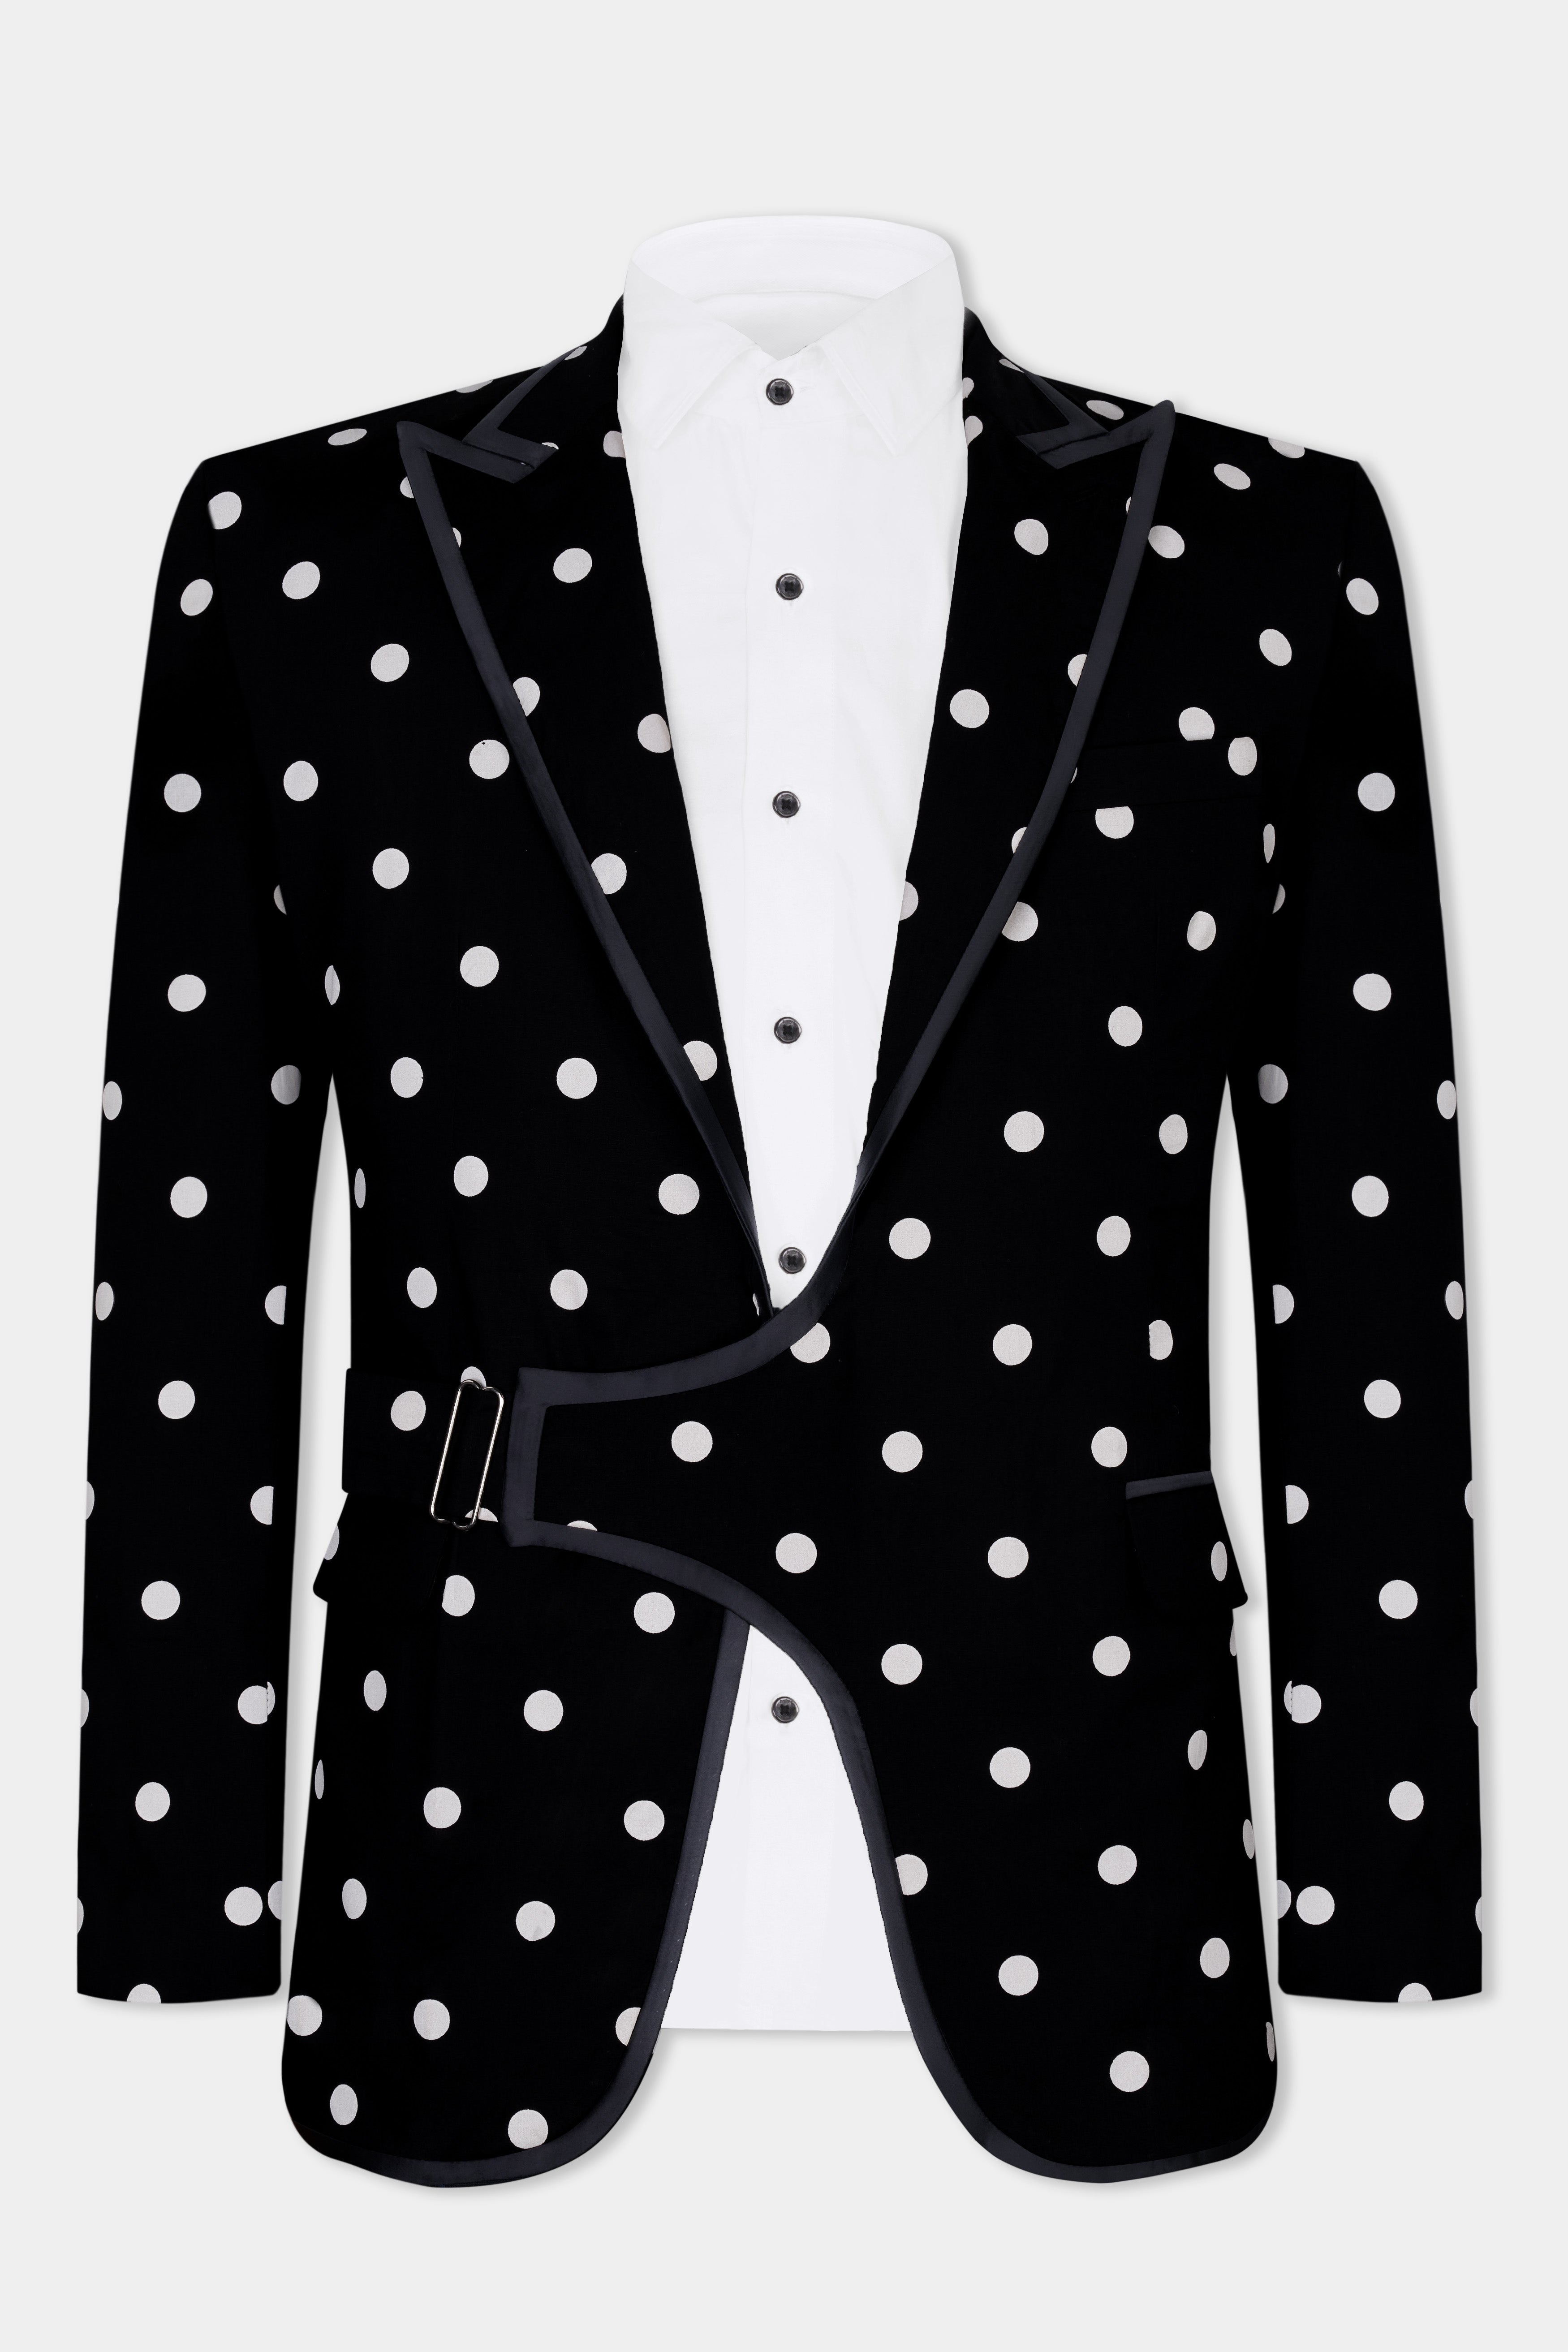 Jade Black with White Polka Dotted Premium Cotton Designer Suit ST2845-SBP-D442-36, ST2845-SBP-D442-38, ST2845-SBP-D442-40, ST2845-SBP-D442-42, ST2845-SBP-D442-44, ST2845-SBP-D442-46, ST2845-SBP-D442-48, ST2845-SBP-D442-50, ST2845-SBP-D442-52, ST2845-SBP-D442-54, ST2845-SBP-D442-56, ST2845-SBP-D442-58, ST2845-SBP-D442-60